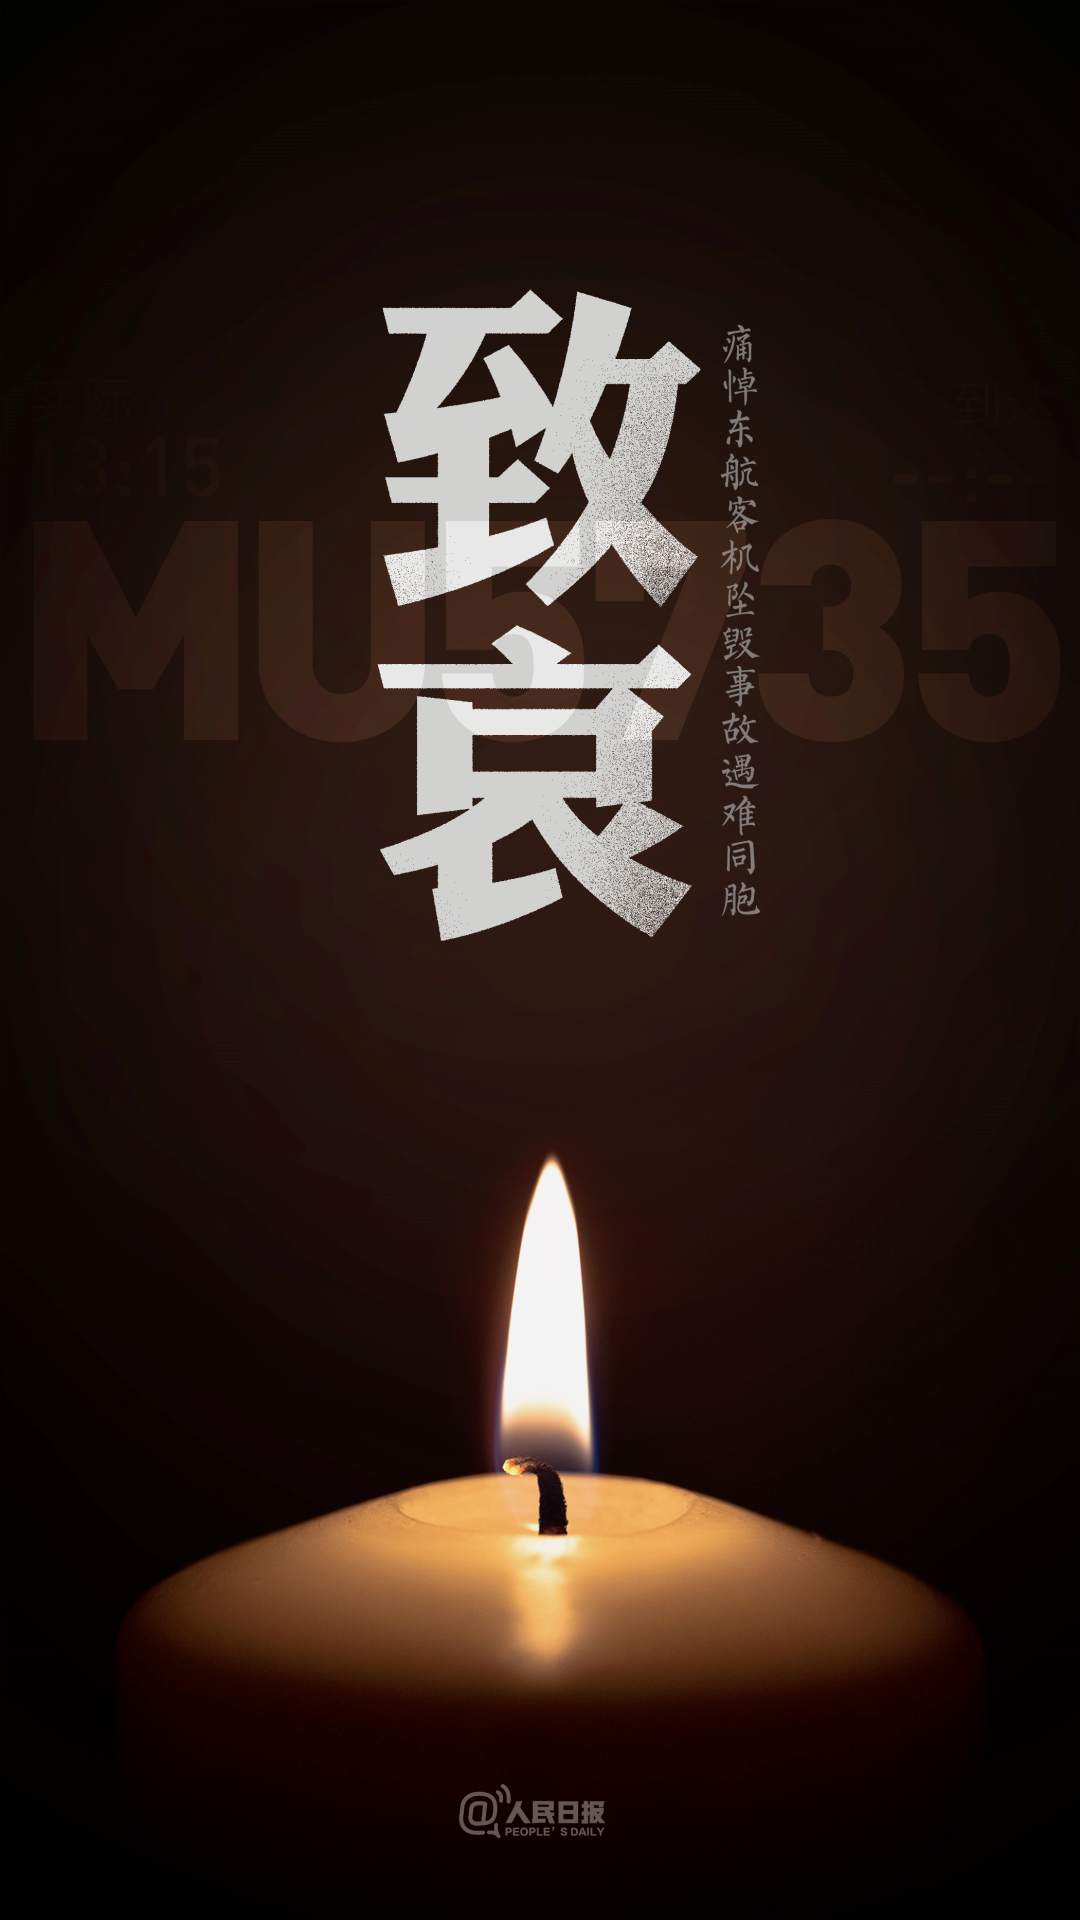 东航MU5735航班上人员已全部遇难